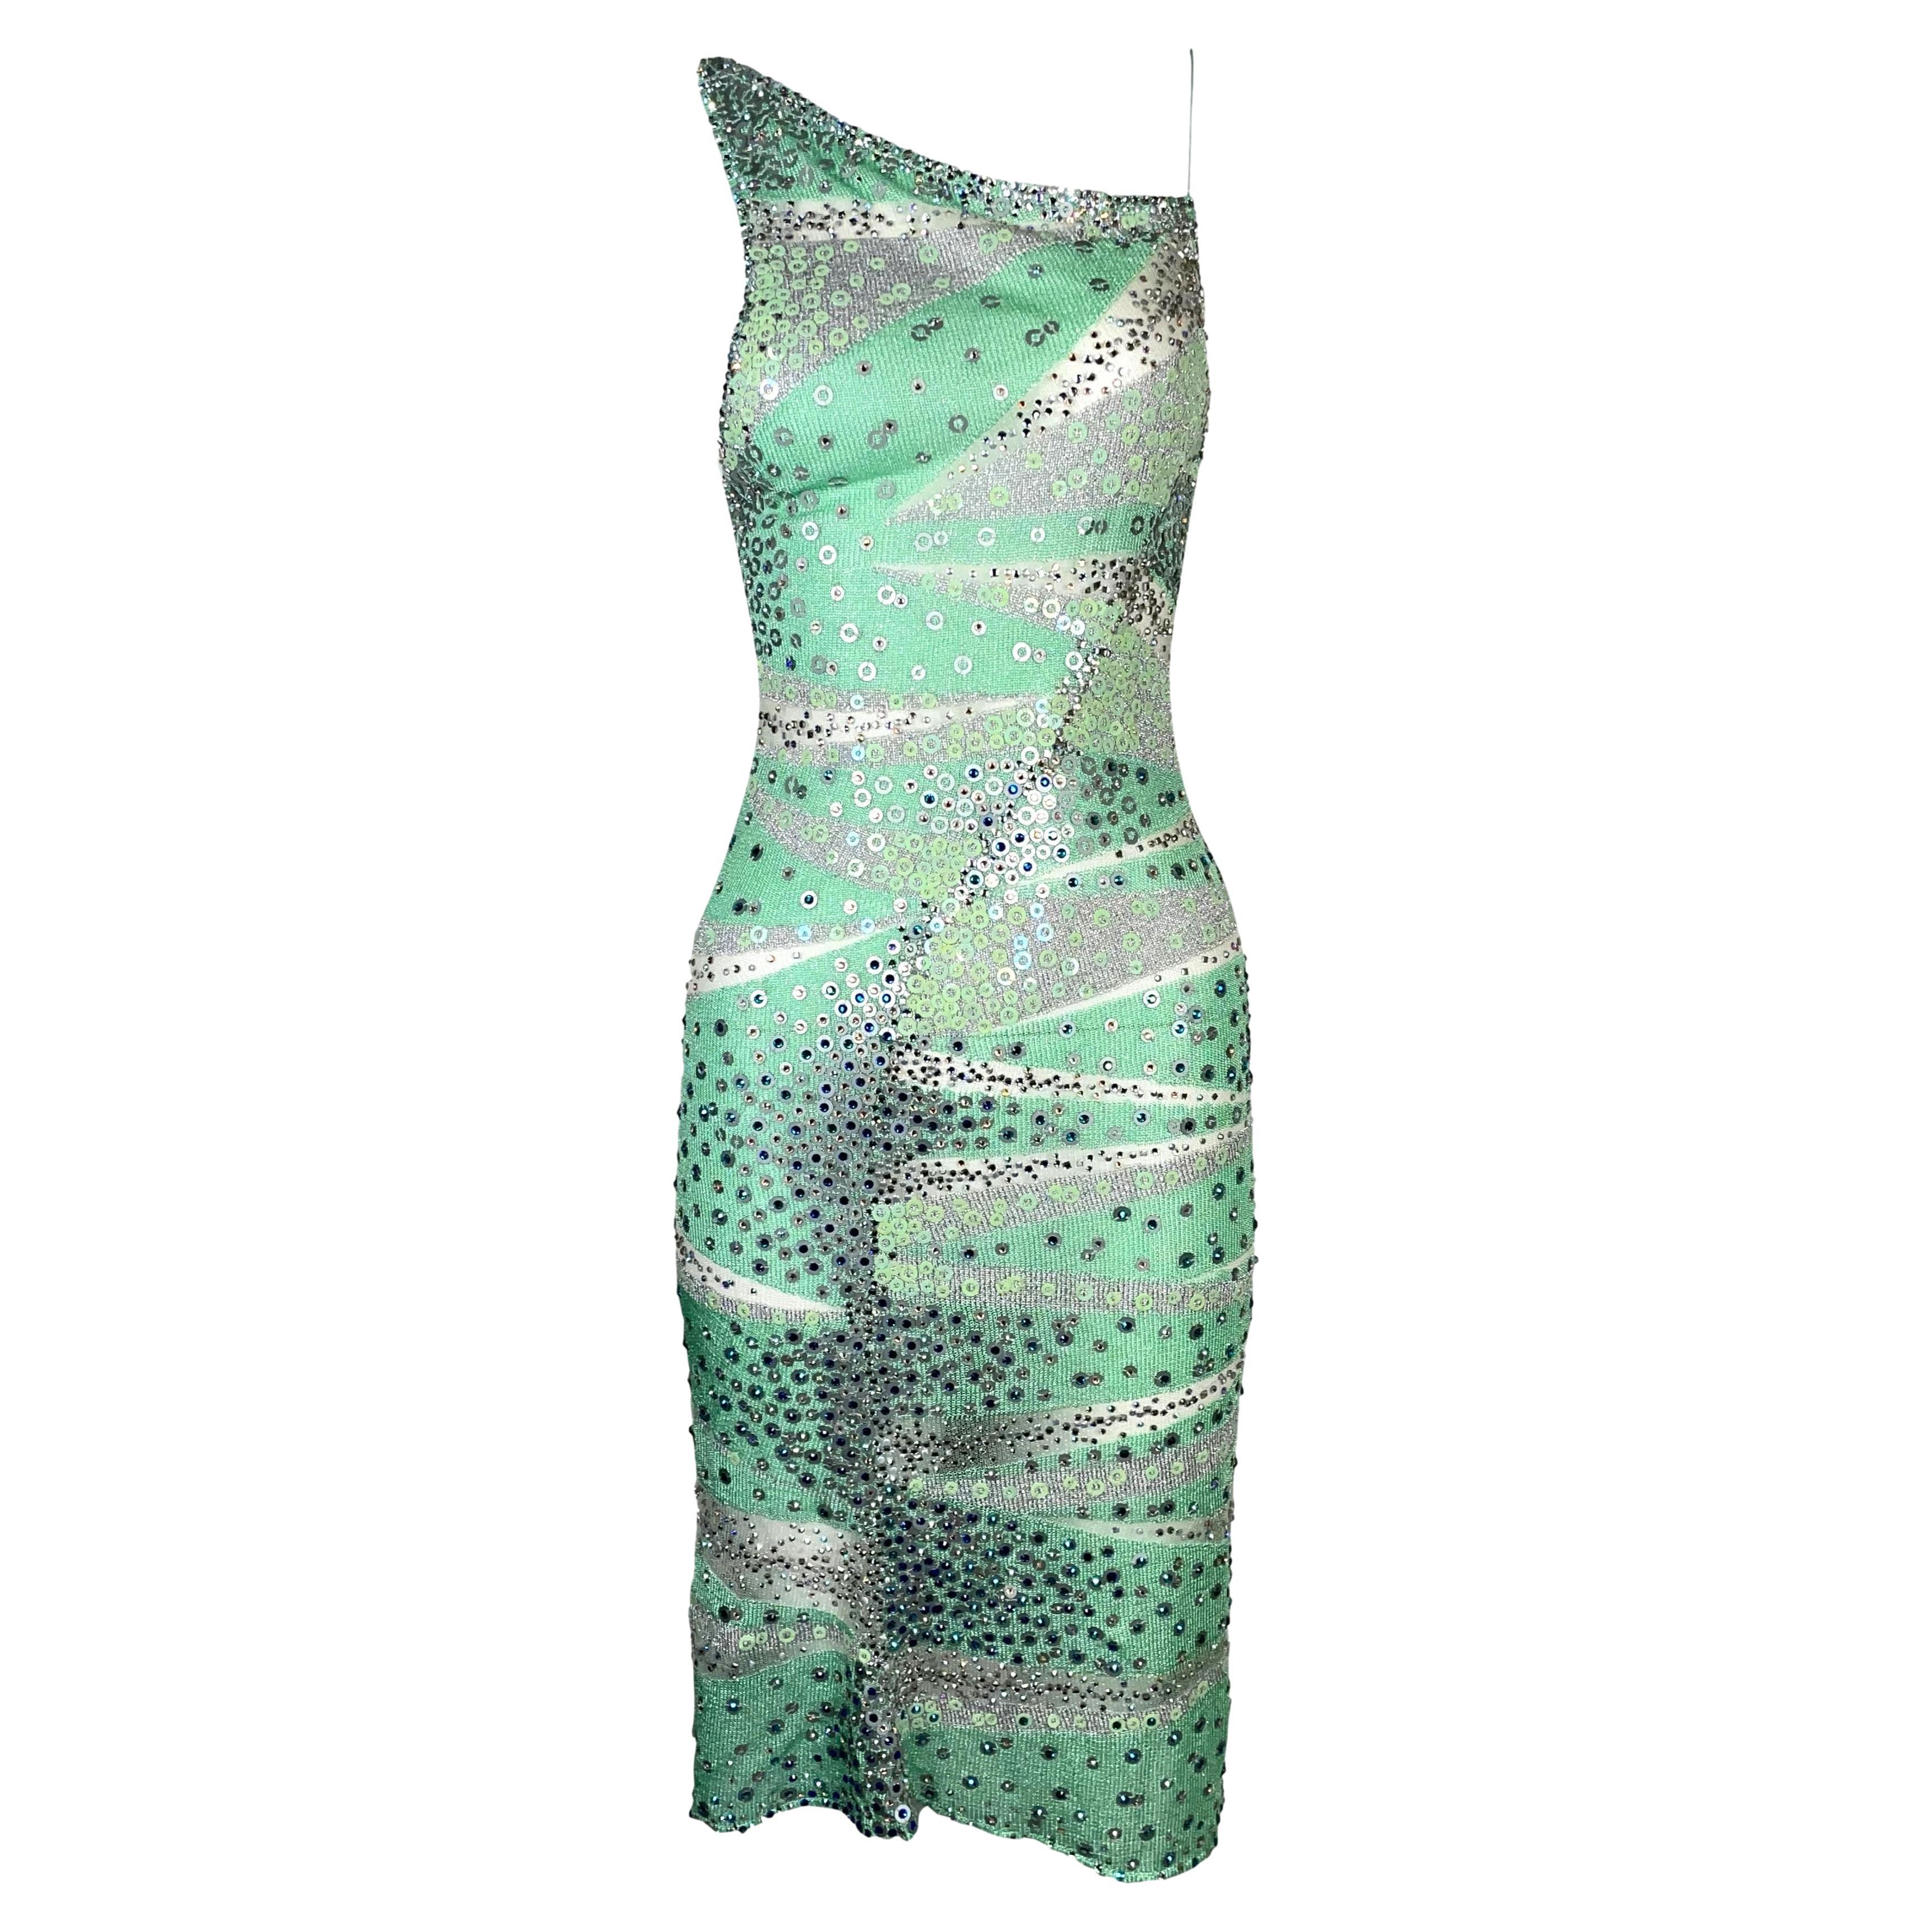 S/S 2001 Julien Macdonald Sheer Green Mesh Embellished Dress For Sale